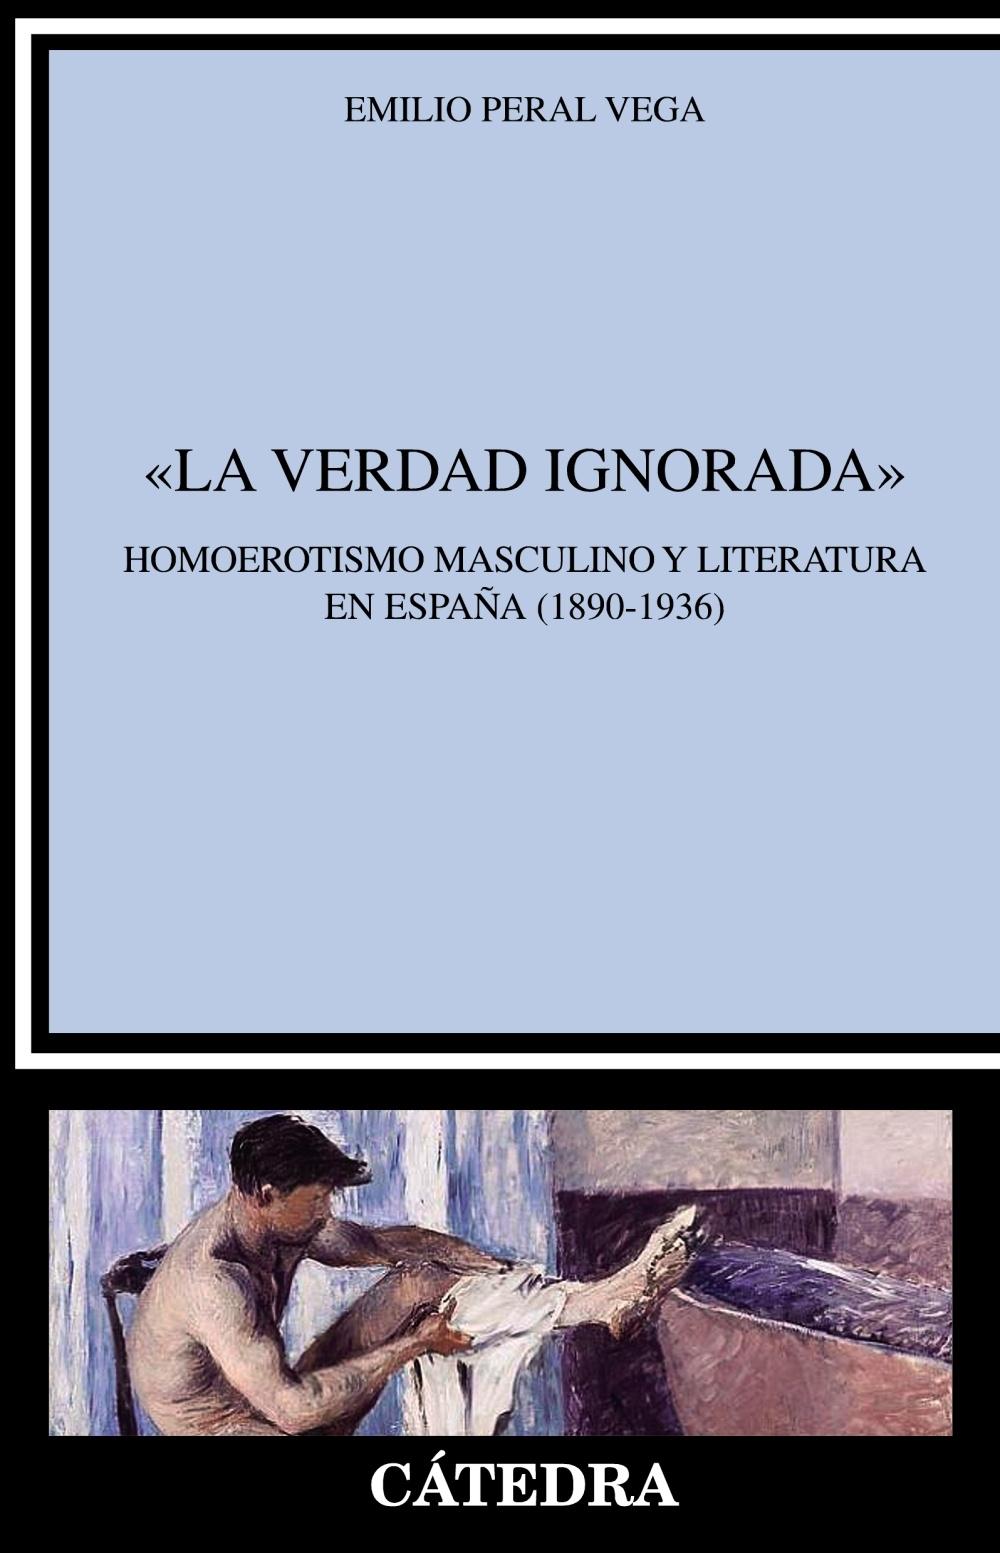 "La verdad ignorada". Homoerotismo masculino y literatura en España "(1890-1936)"